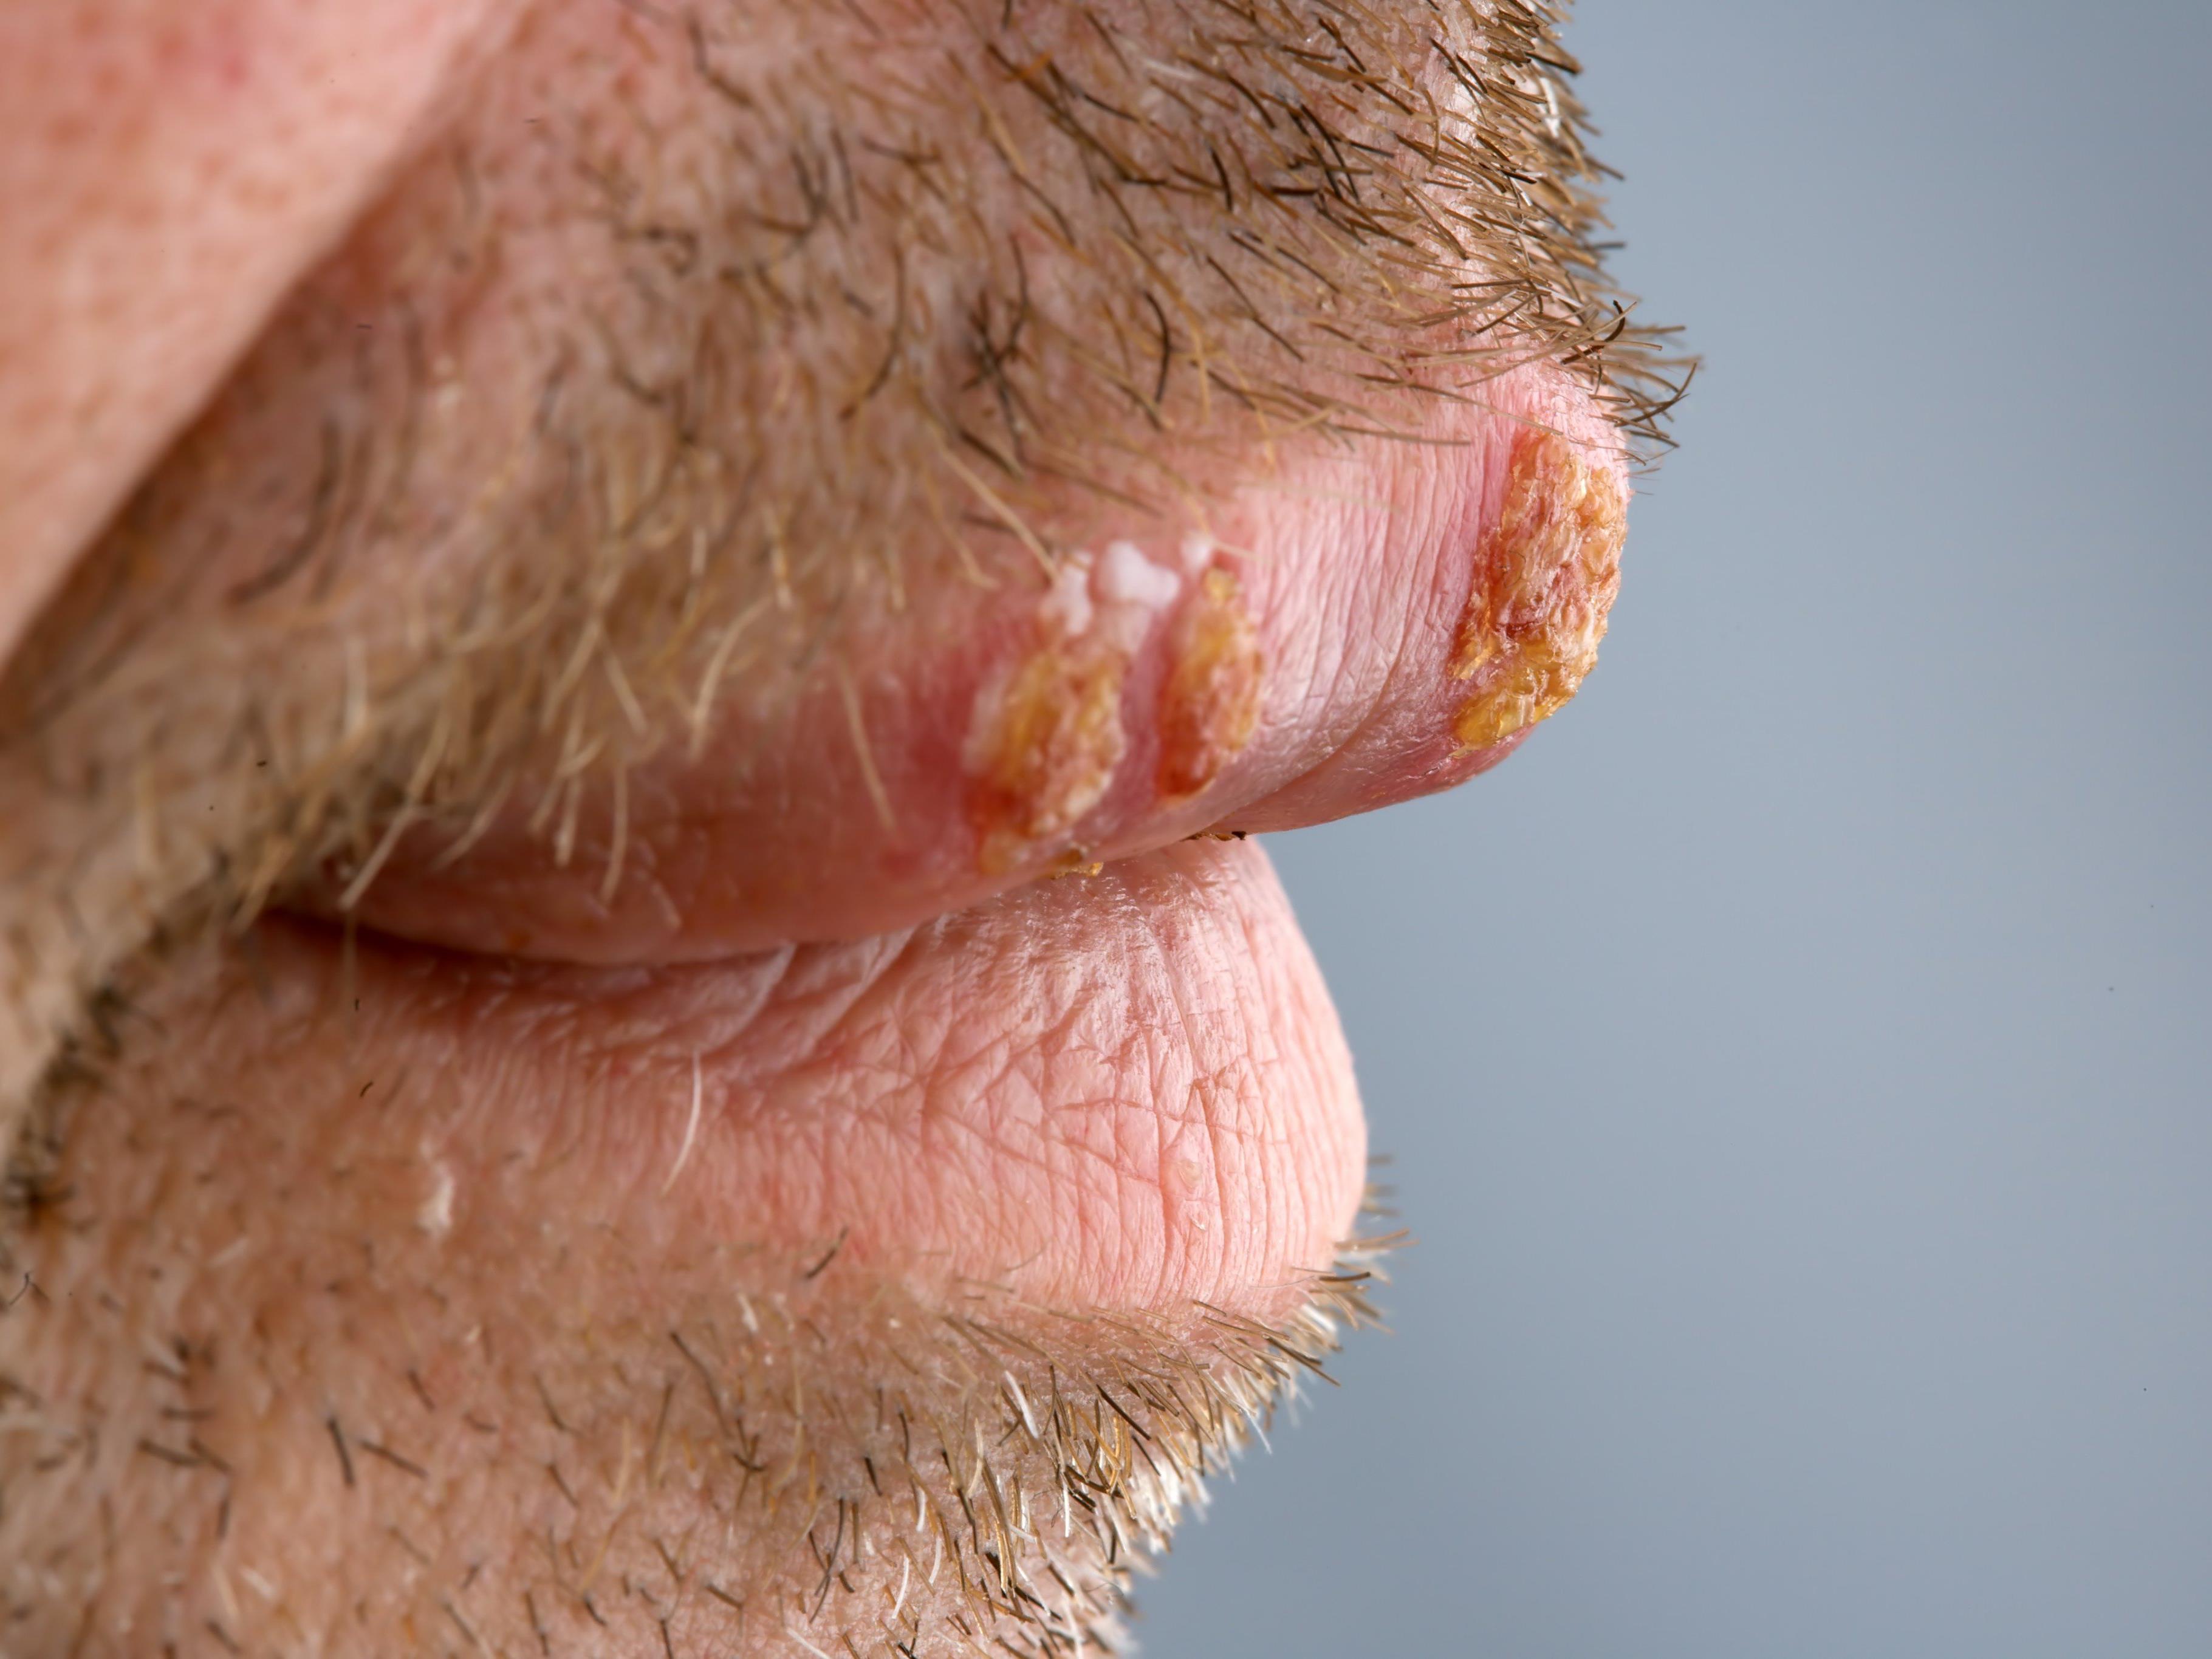 Bei einem Herpesausbruch kommt es zu schmerzhaften Bläschen. Am häufigsten sind die Lippen betroffen.